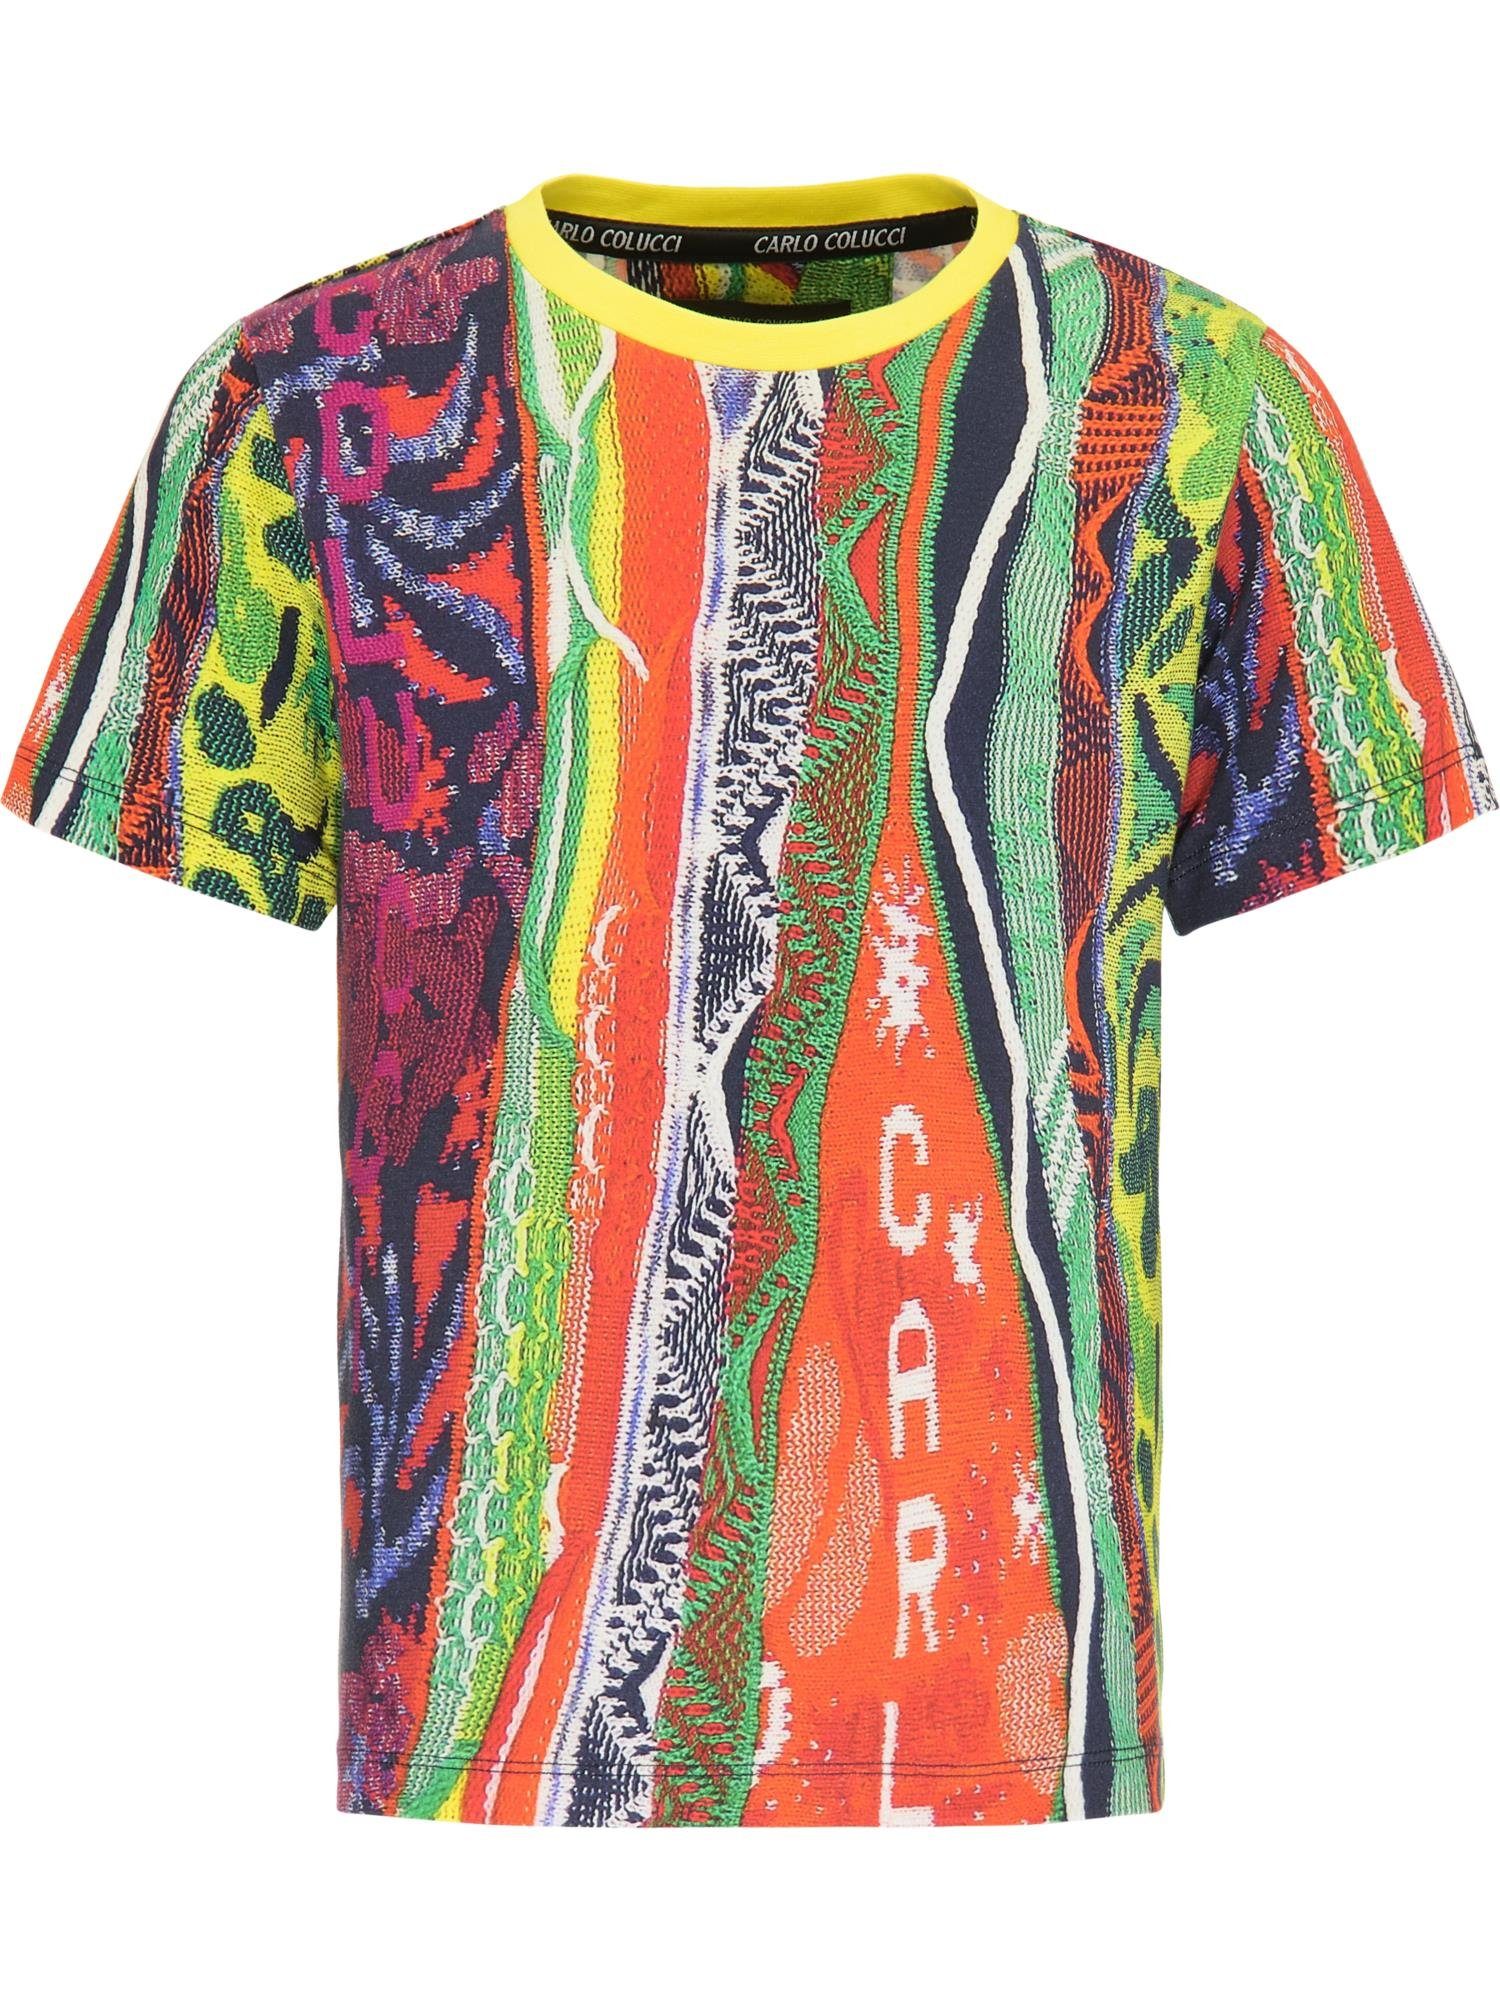 CARLO COLUCCI T-Shirt »Coghi« online kaufen | OTTO